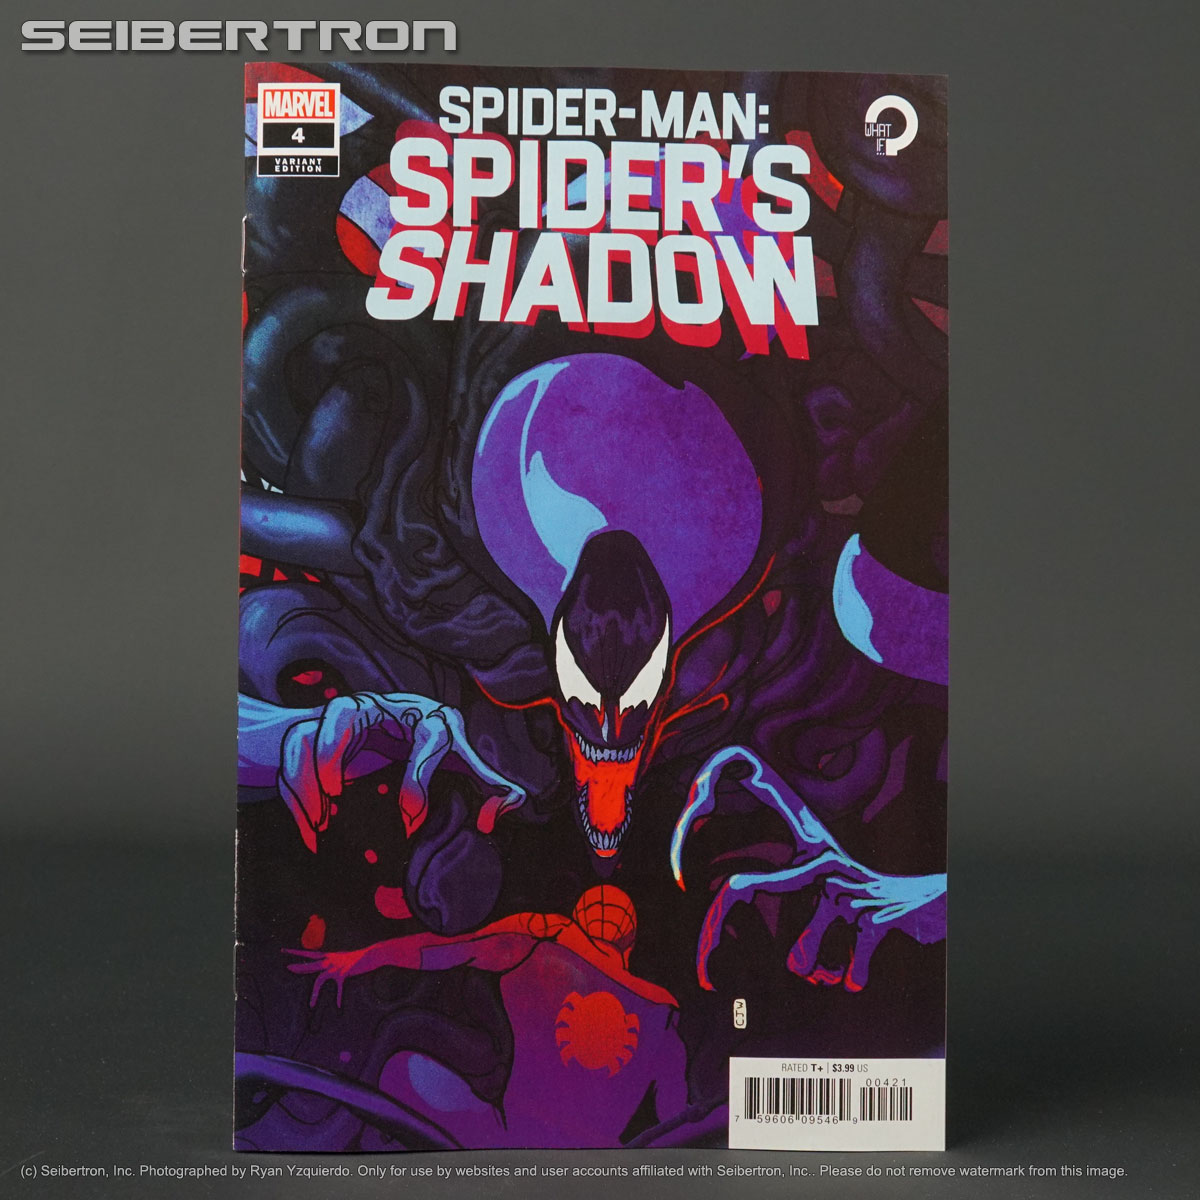 SPIDER-MAN SPIDER'S SHADOW #4 var 1:25 Marvel Comics 2021 210714A (CA) Ward